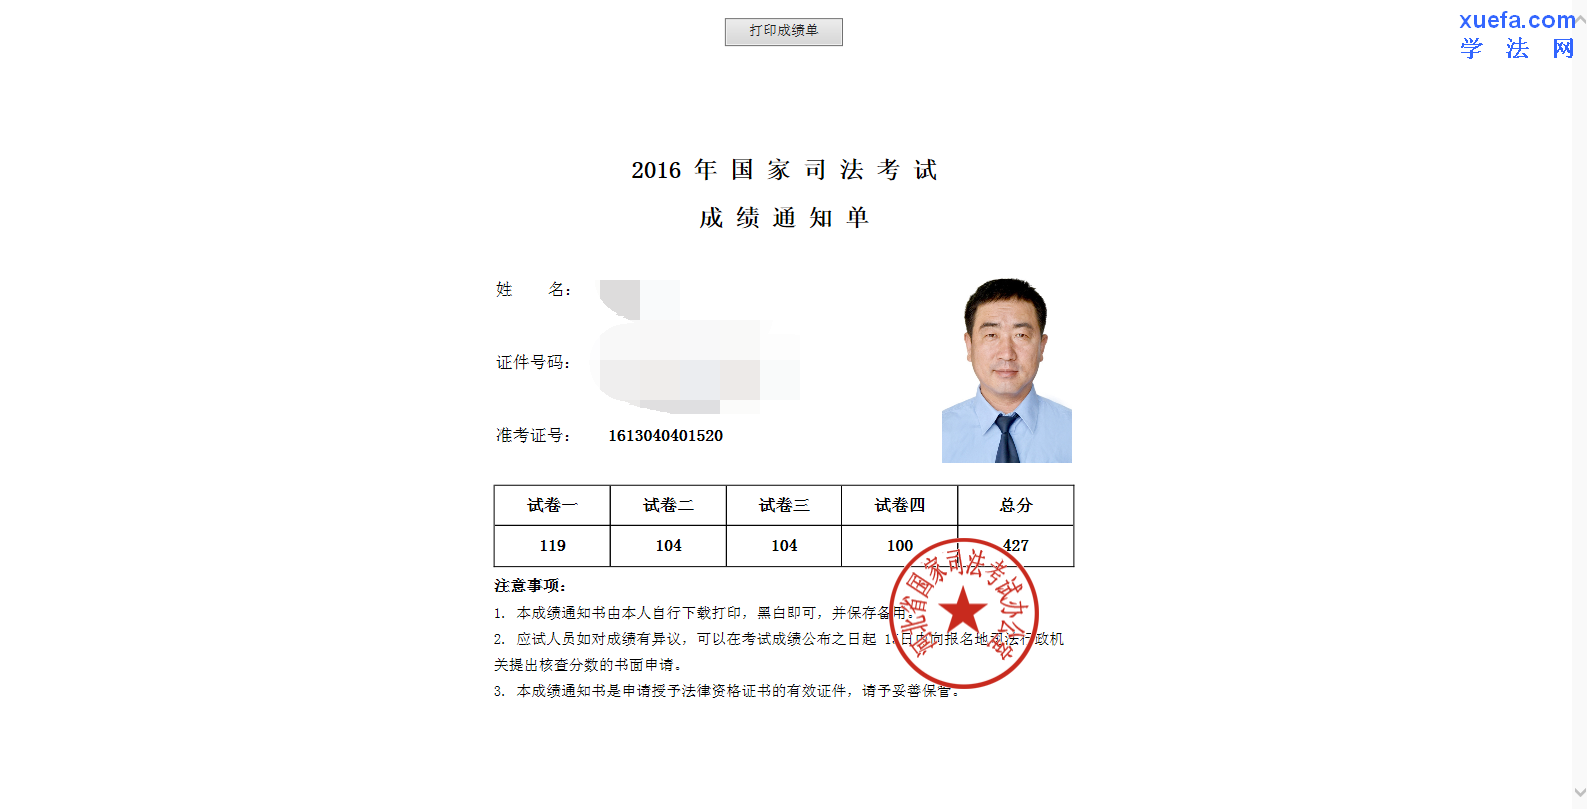 2016年陕西司法考试准考证打印时间:9月9日至9月23日